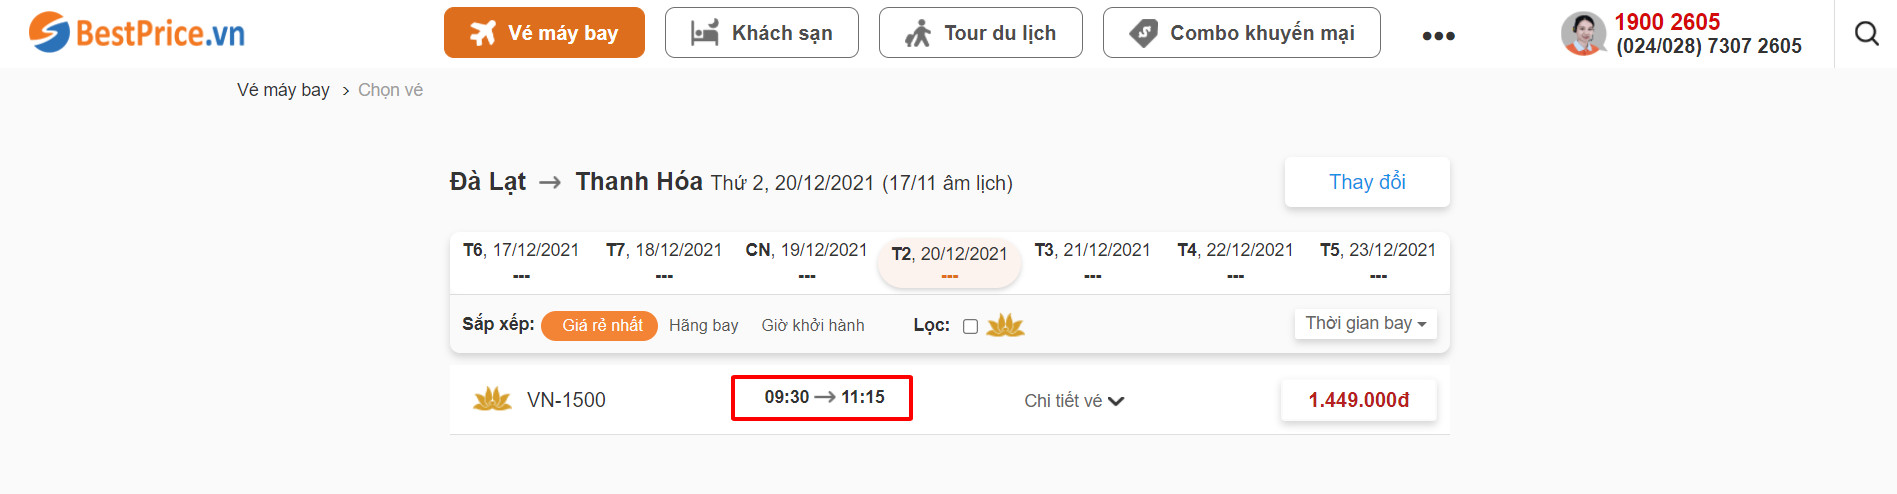 Đặt vé máy bay Đà Lạt đi Thanh Hóa tại website bestprice.vn